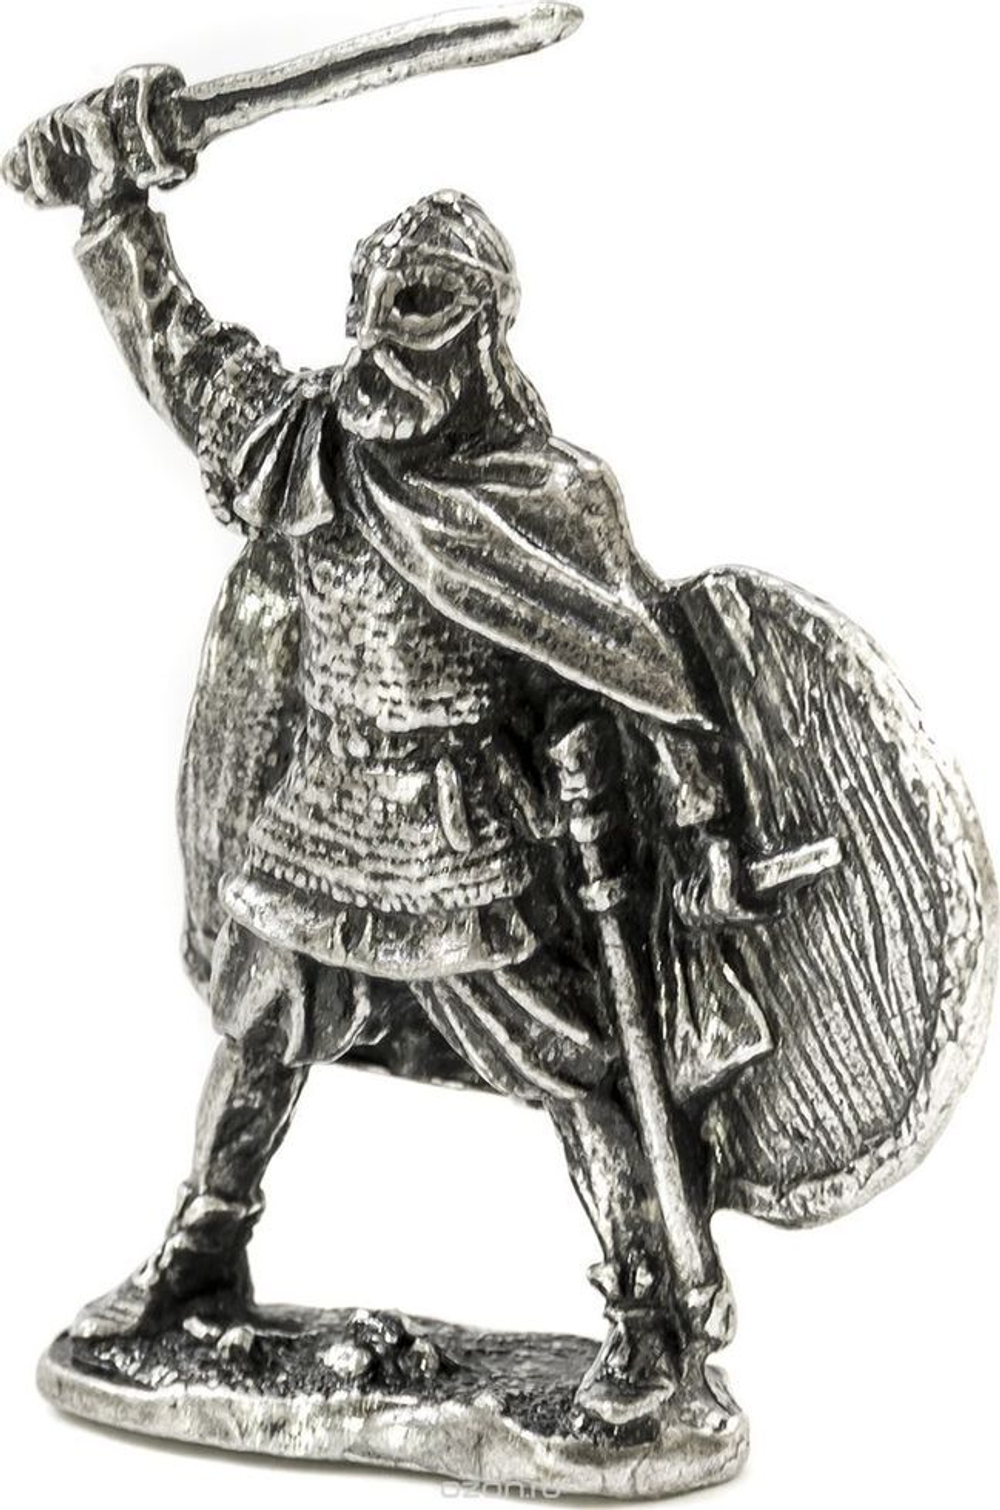 Фигурка Рыцари "Воевода с мечом" олово. Игрушка литая металлическая 54 мм (1:32)